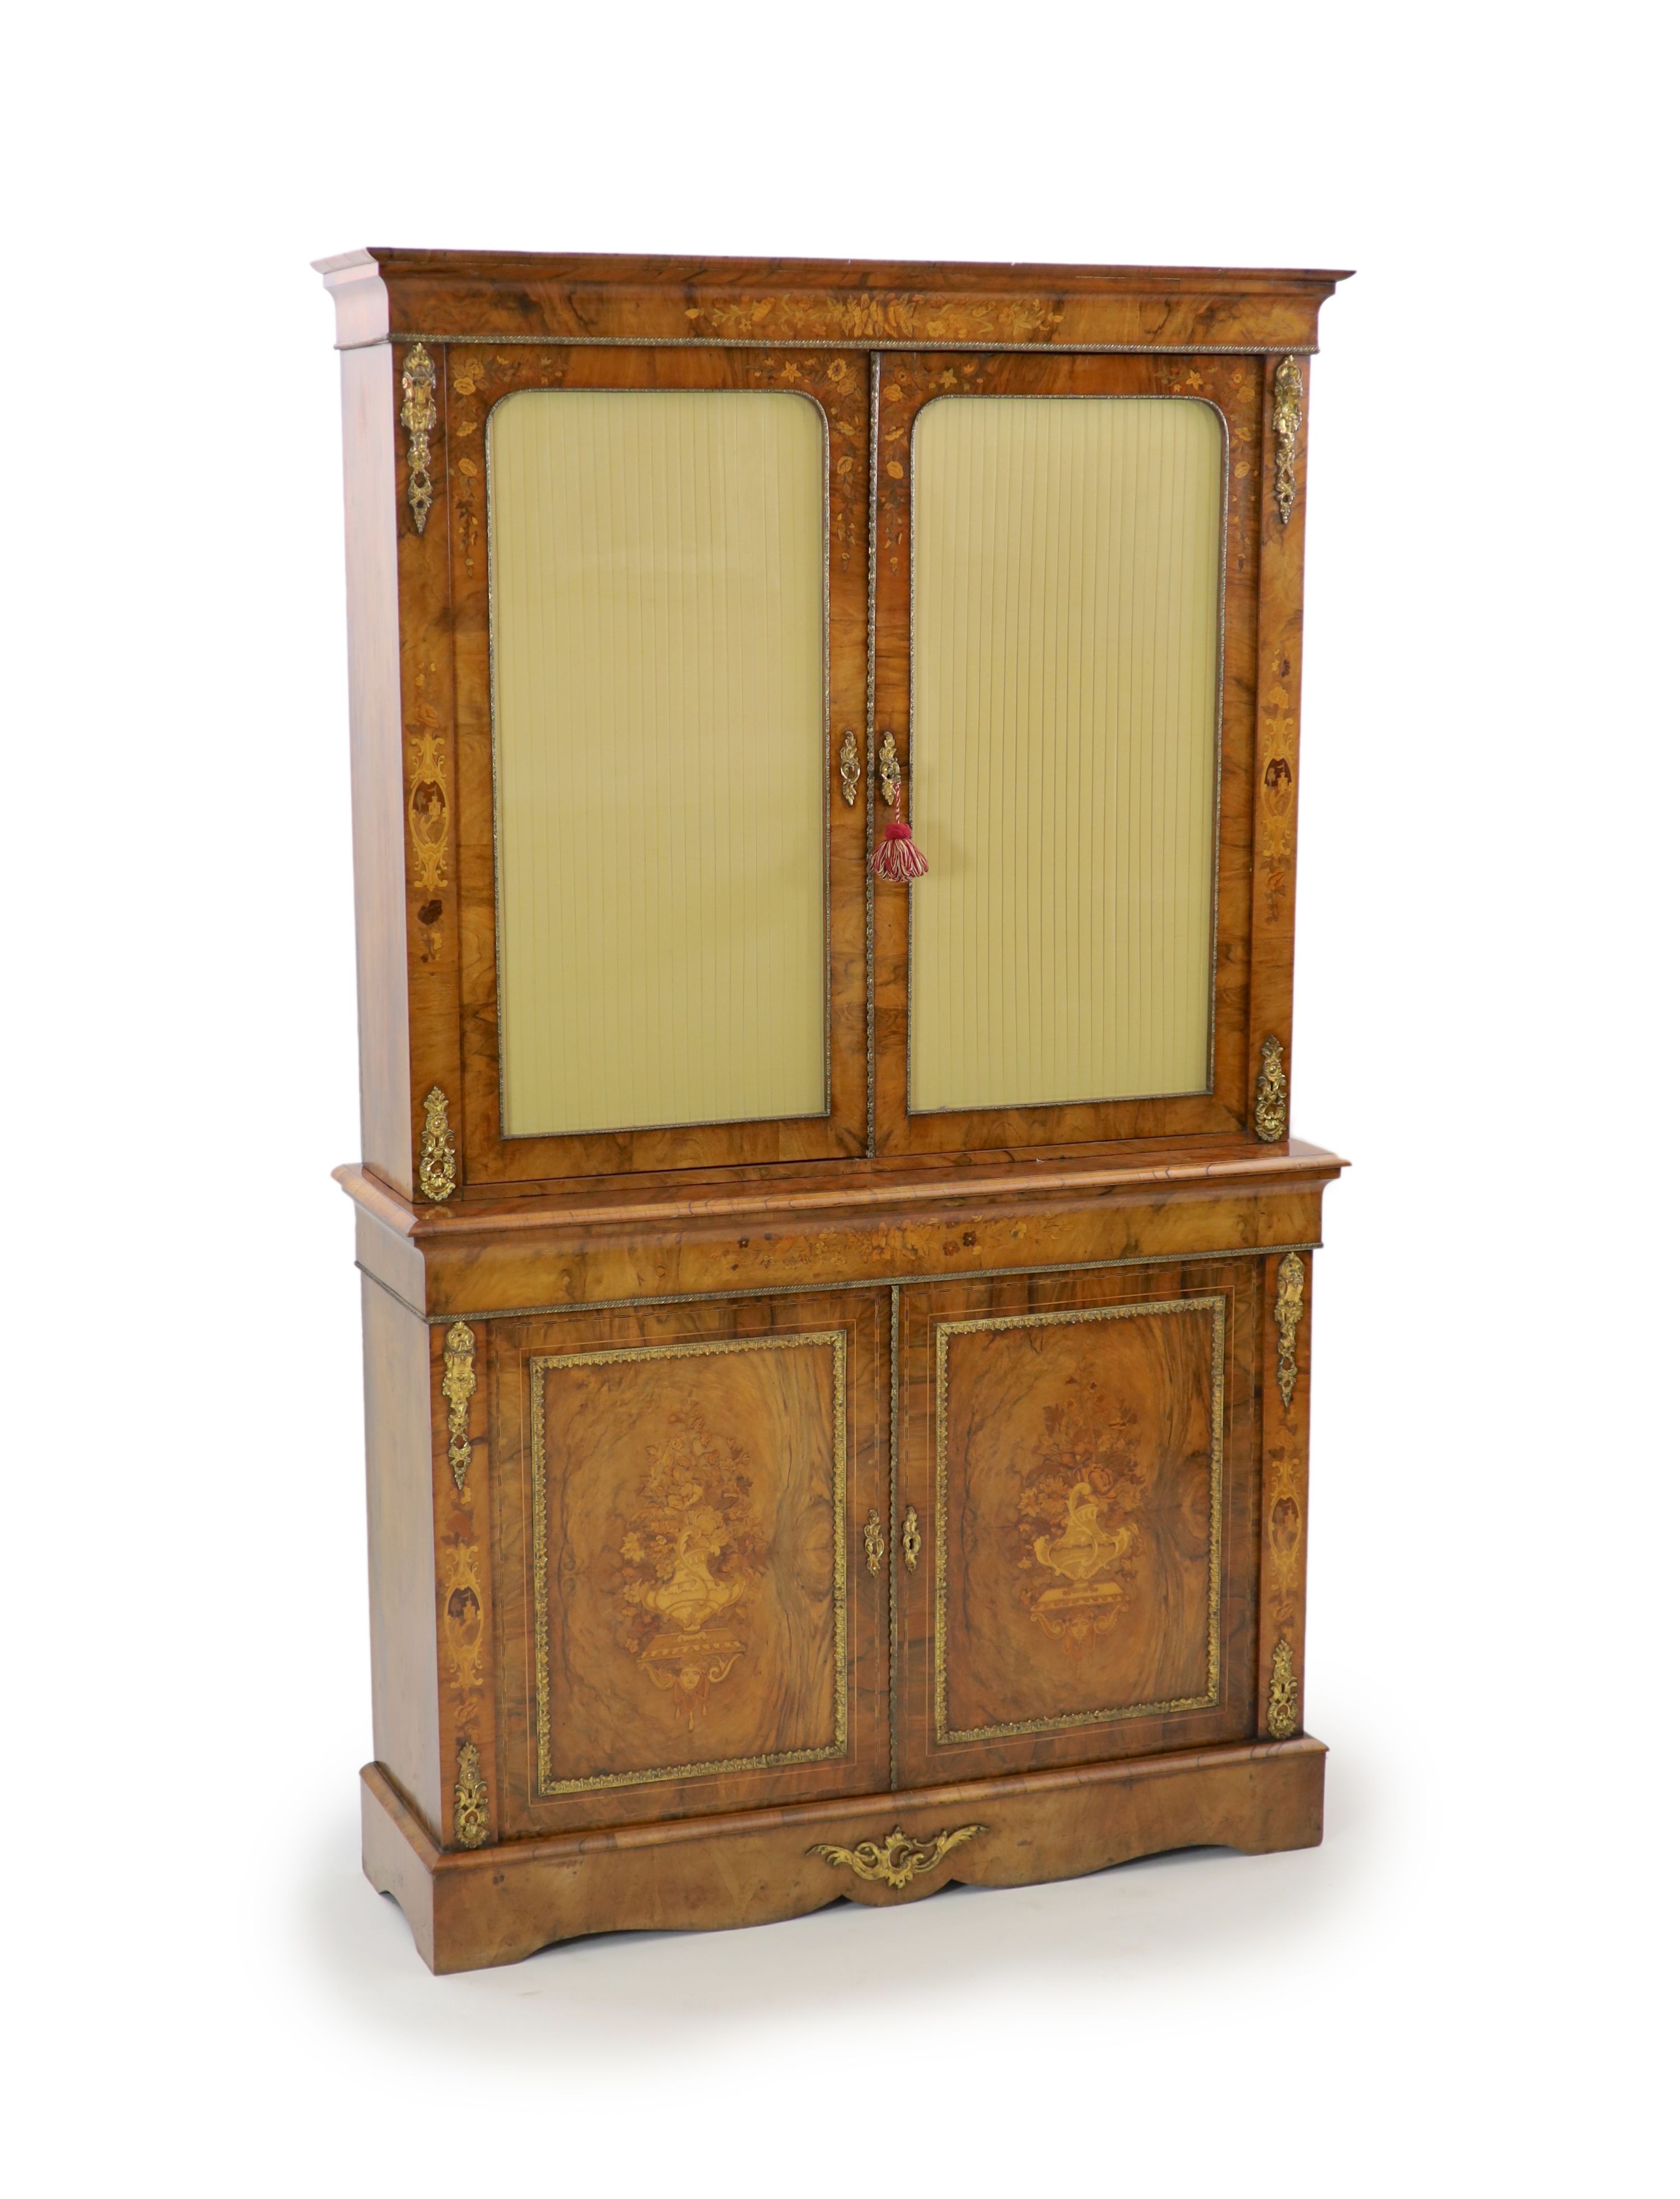 A Victorian ormolu mounted marquetry inlaid walnut bookcase, W.127cm D.40cm H.208cm